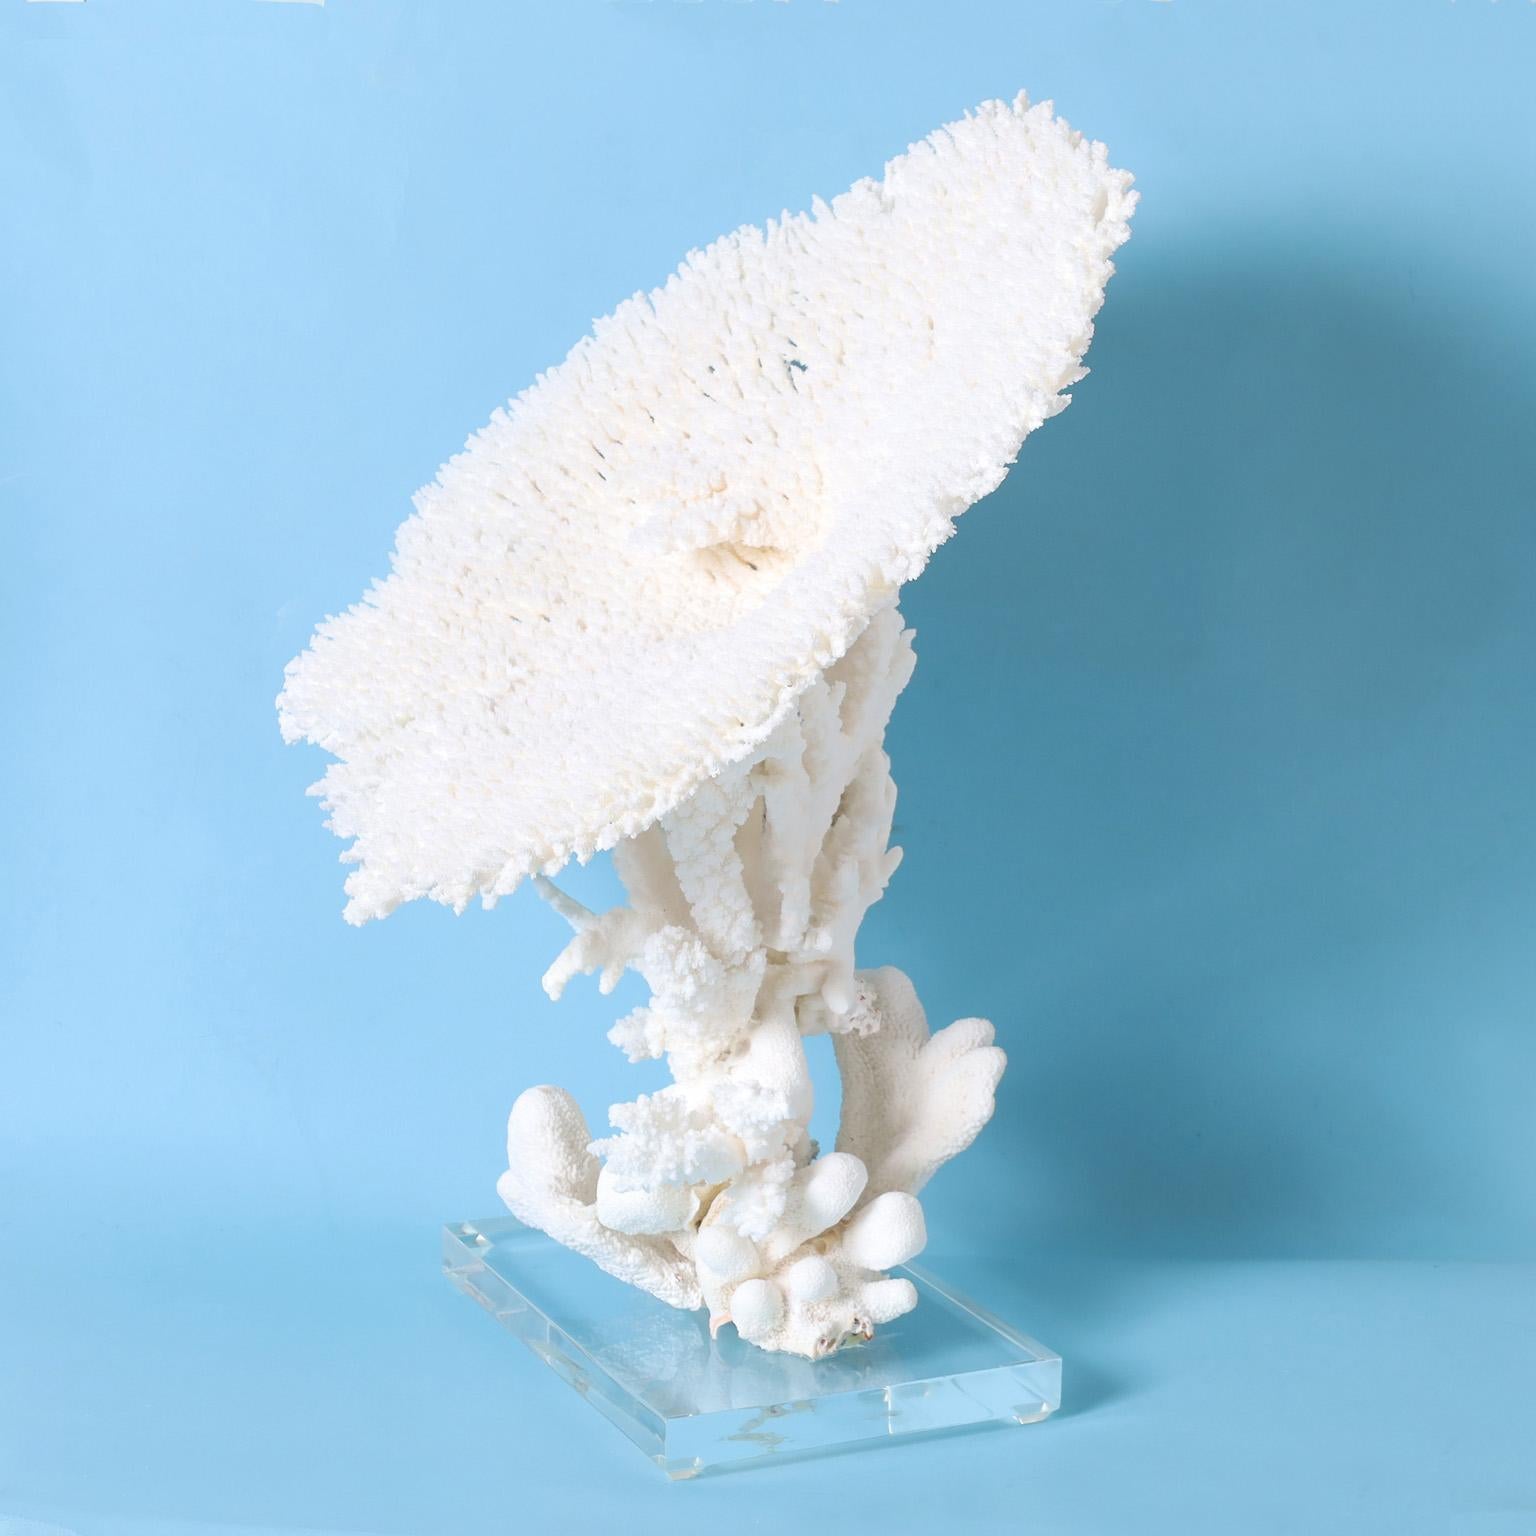 Impressionnant assemblage de corail blanc utilisant un spécimen de corail de table exceptionnellement grand avec ses couleurs et textures inspirées de la mer. Présenté sur une base en lucite pour mettre en valeur les éléments